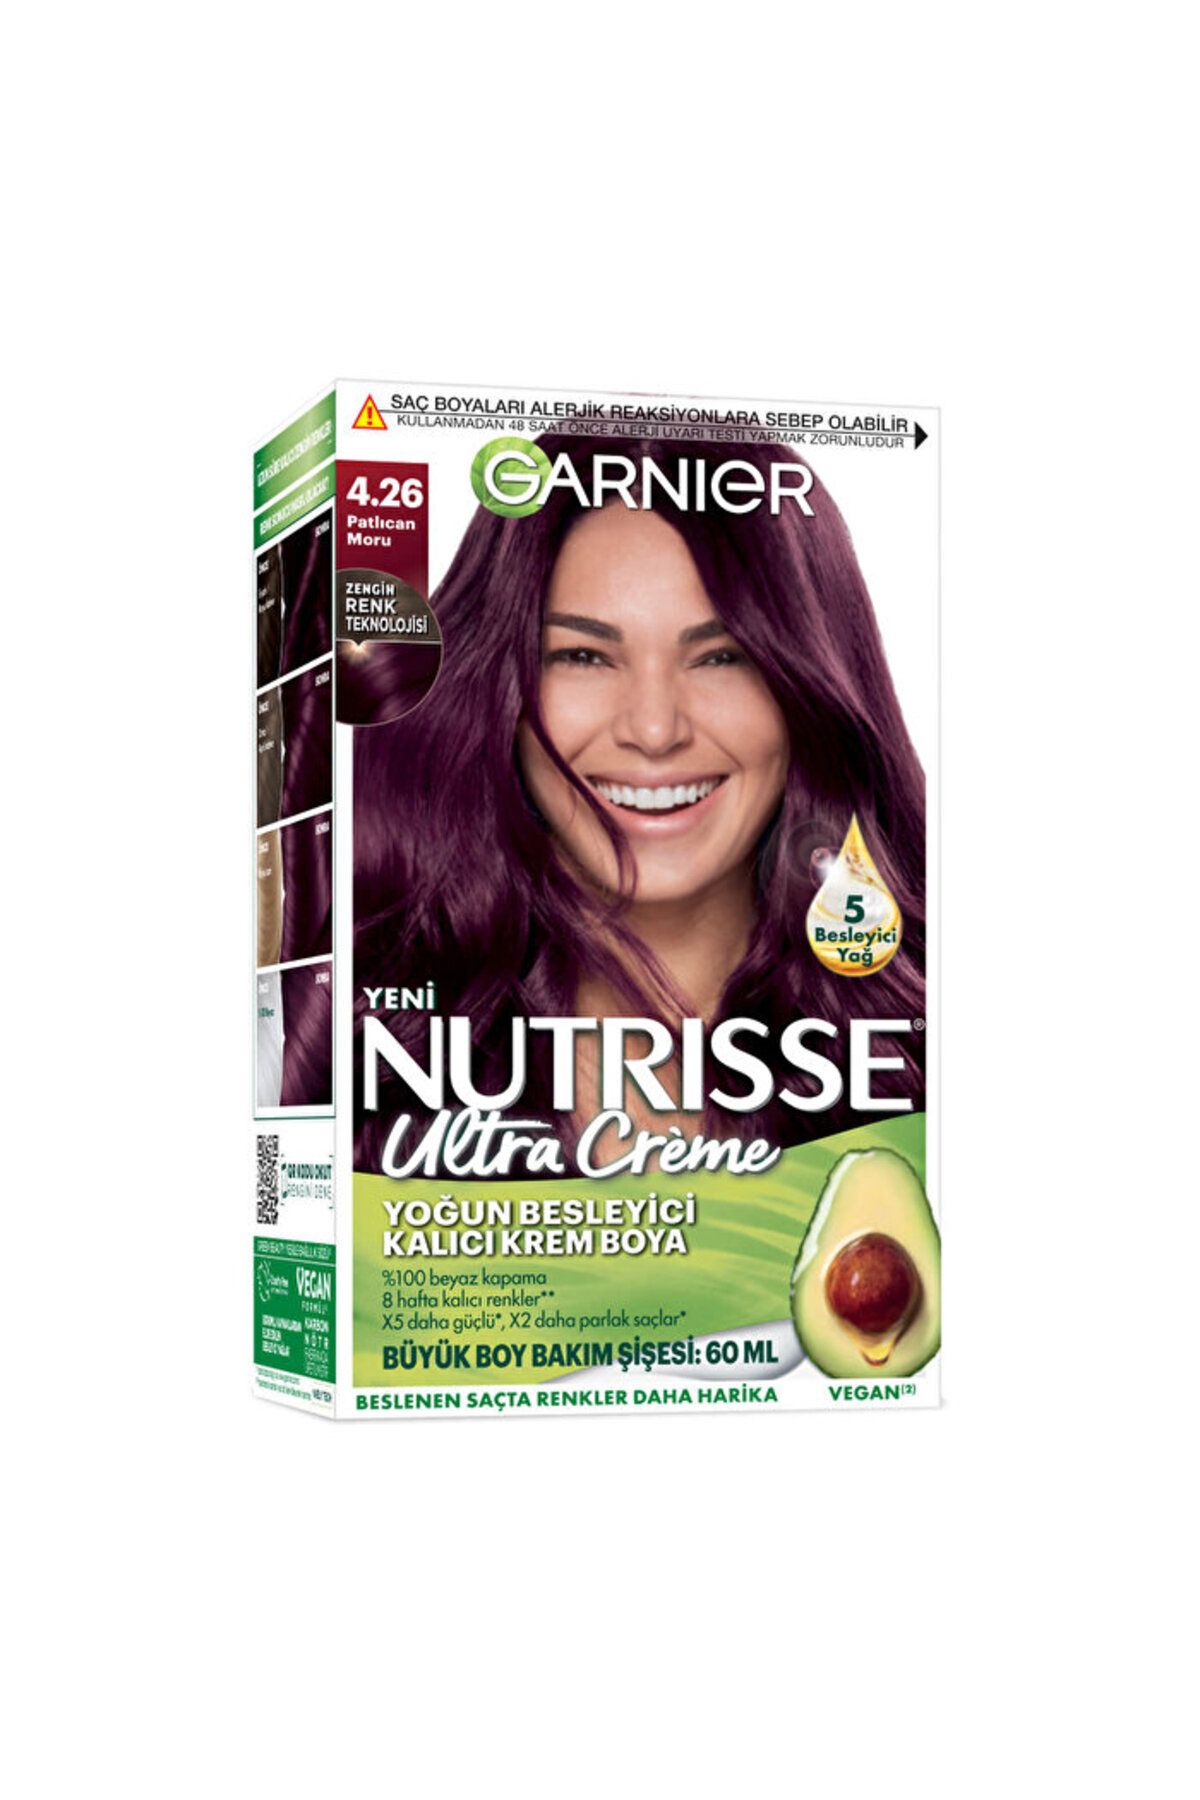 Garnier Nutrisse Yoğun Besleyici Kalıcı Krem Saç Boyası - 4.26 Patlıcan Moru - 160 ml